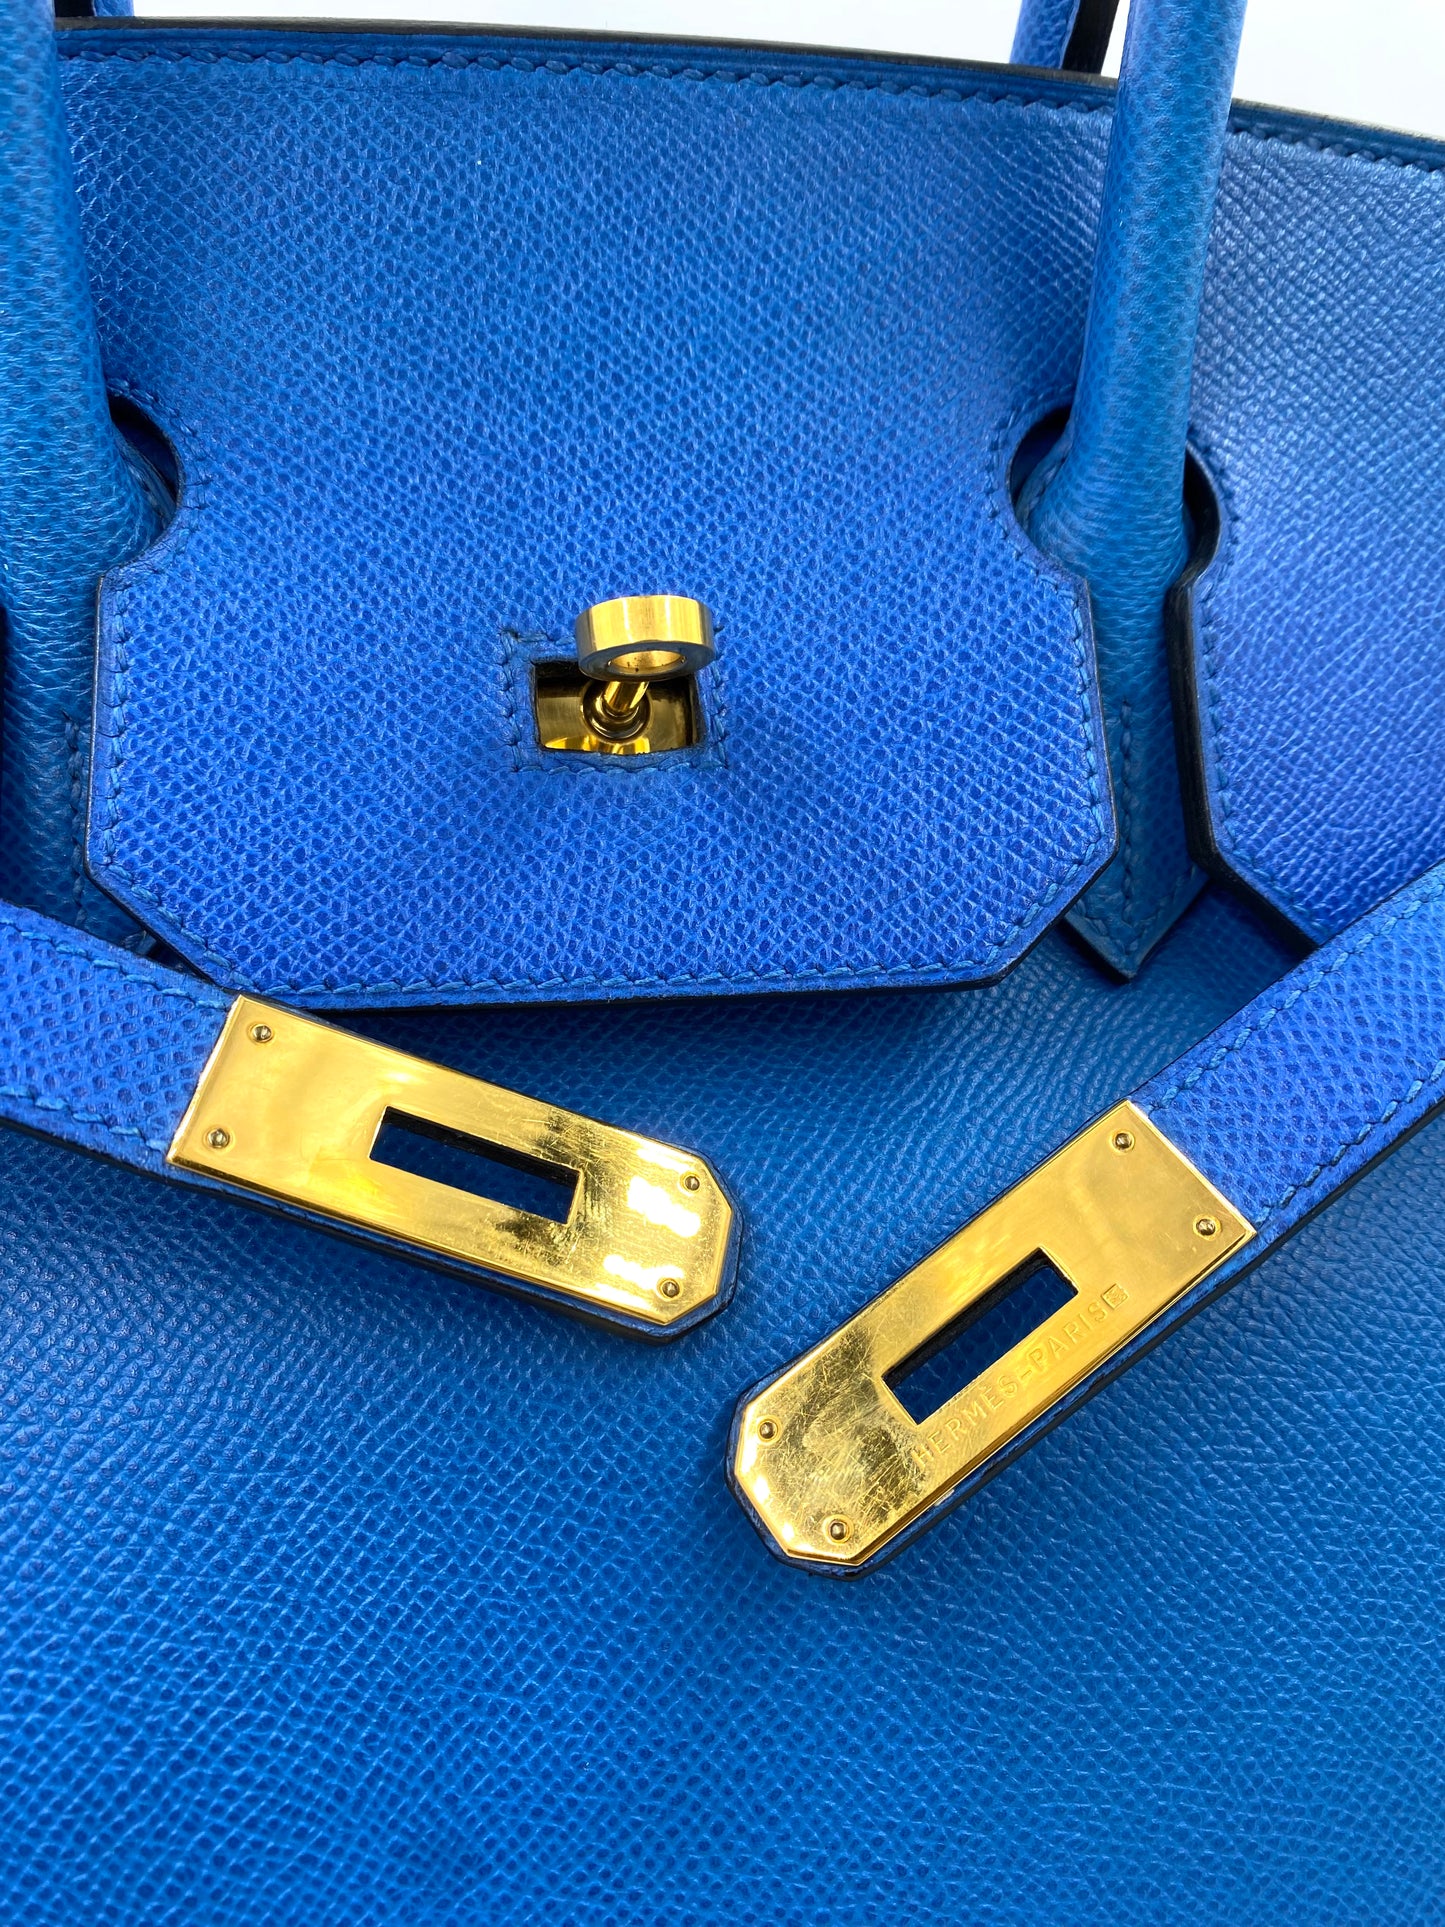 HERMÈS Birkin 35 Epsom Leder Blue de France mit gold Hardware